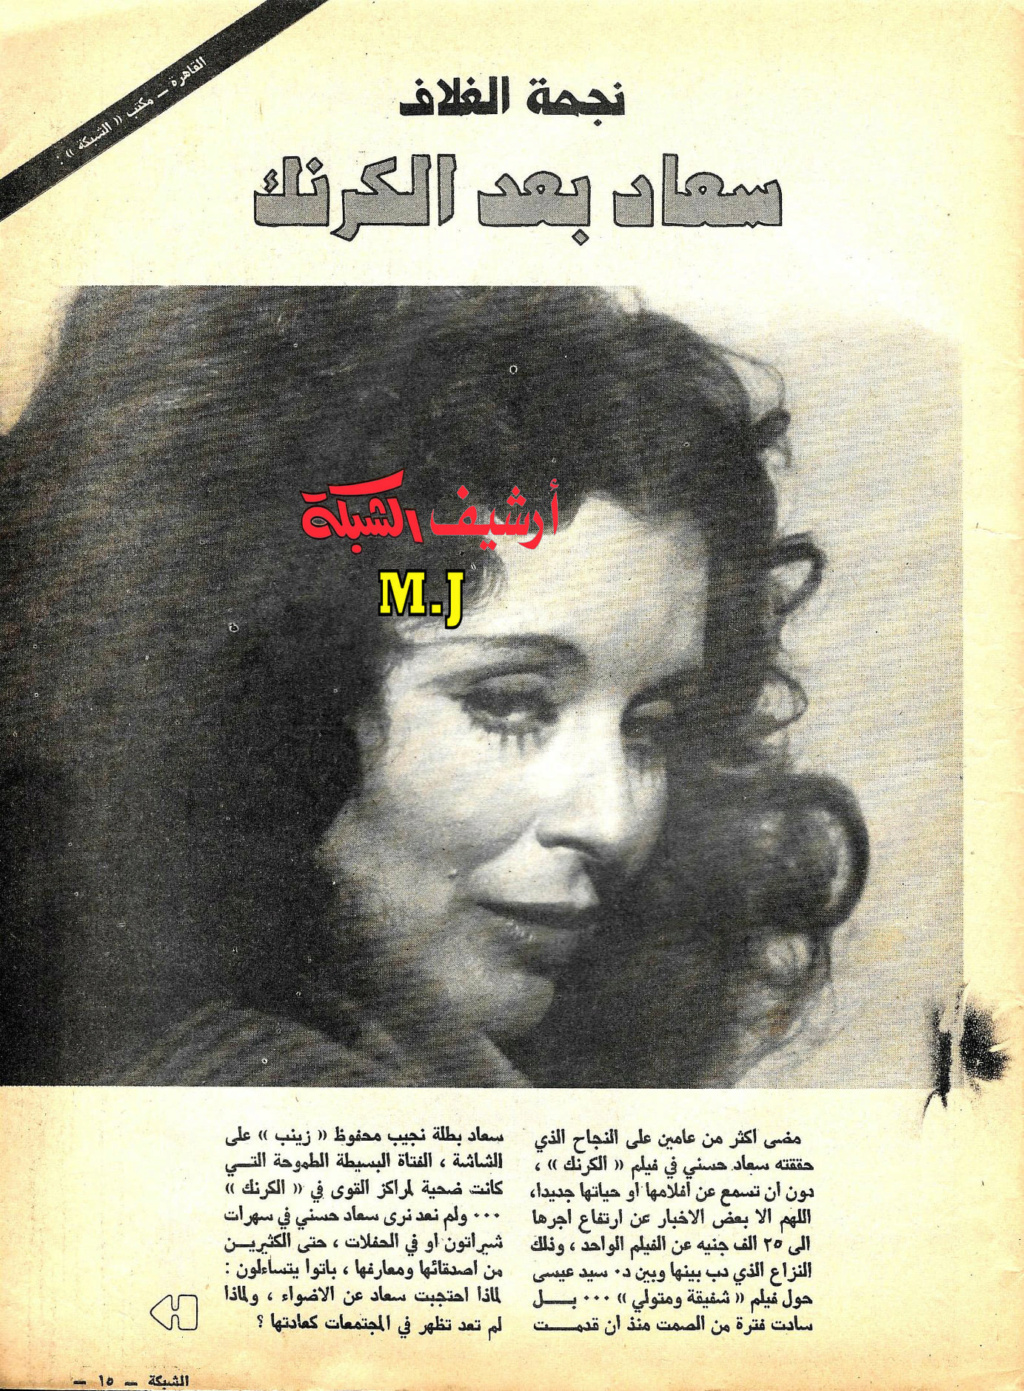 حوار صحفي : سعاد حسني بعد الكرنك 1977 م 1439